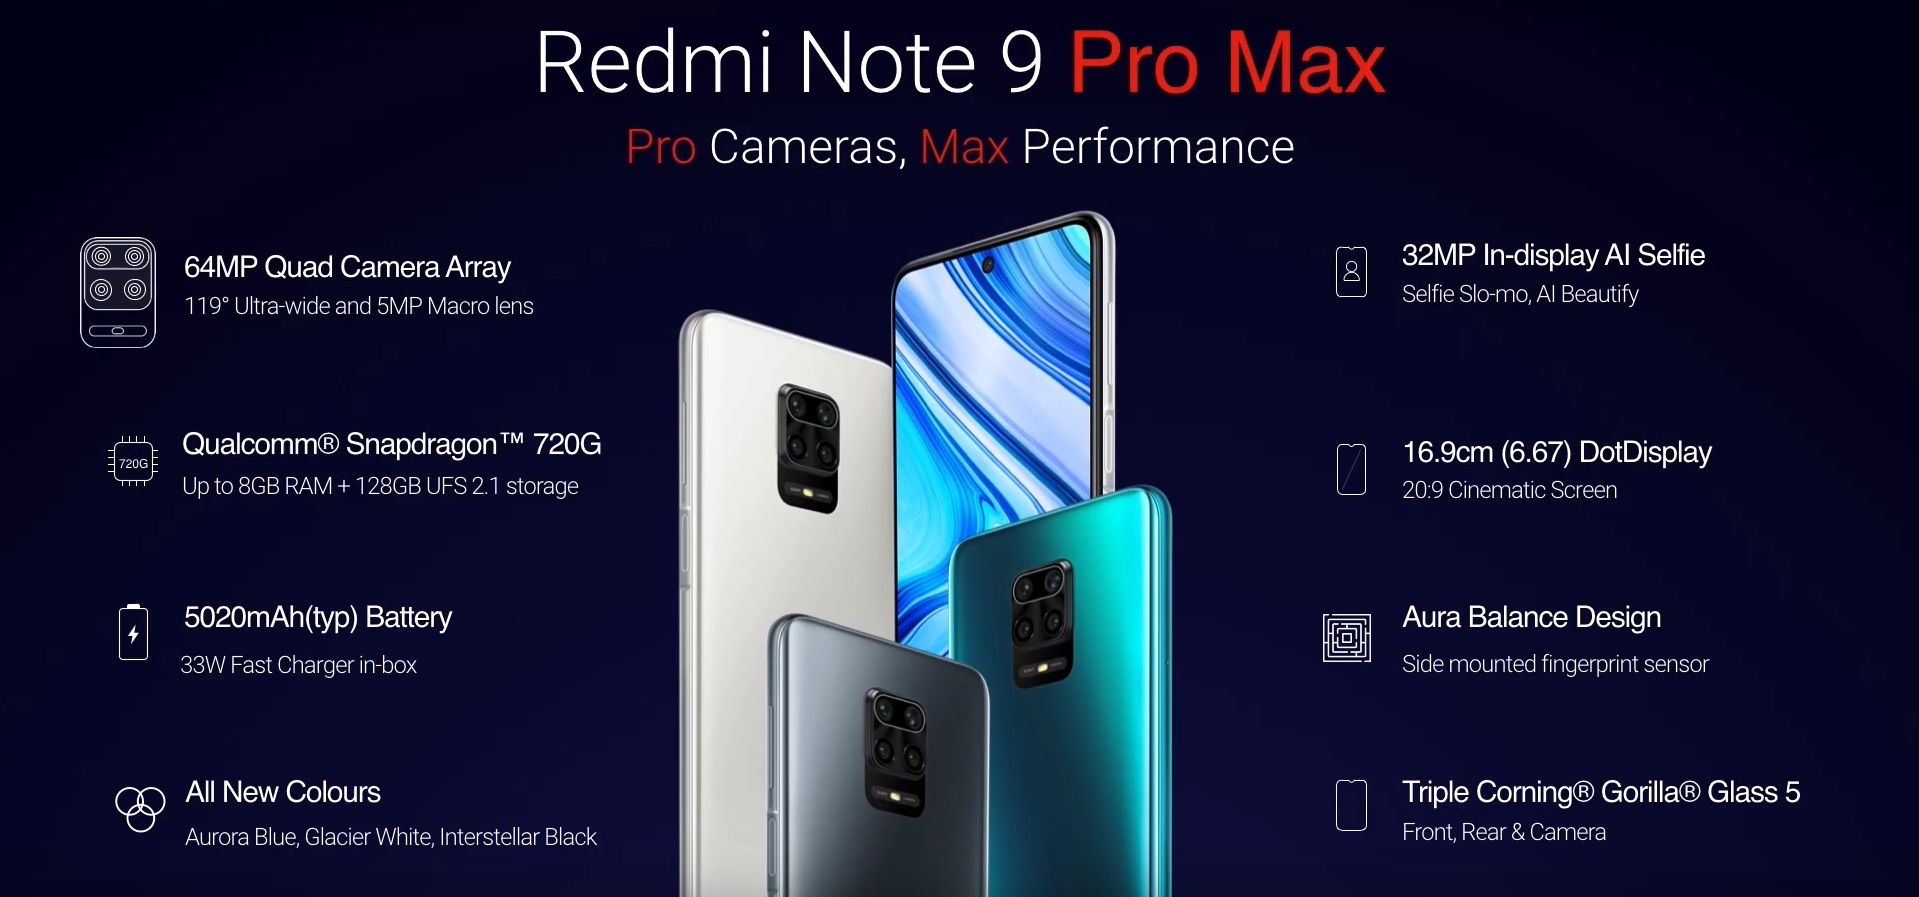 Redmi Note 9 Pro Max smartphone